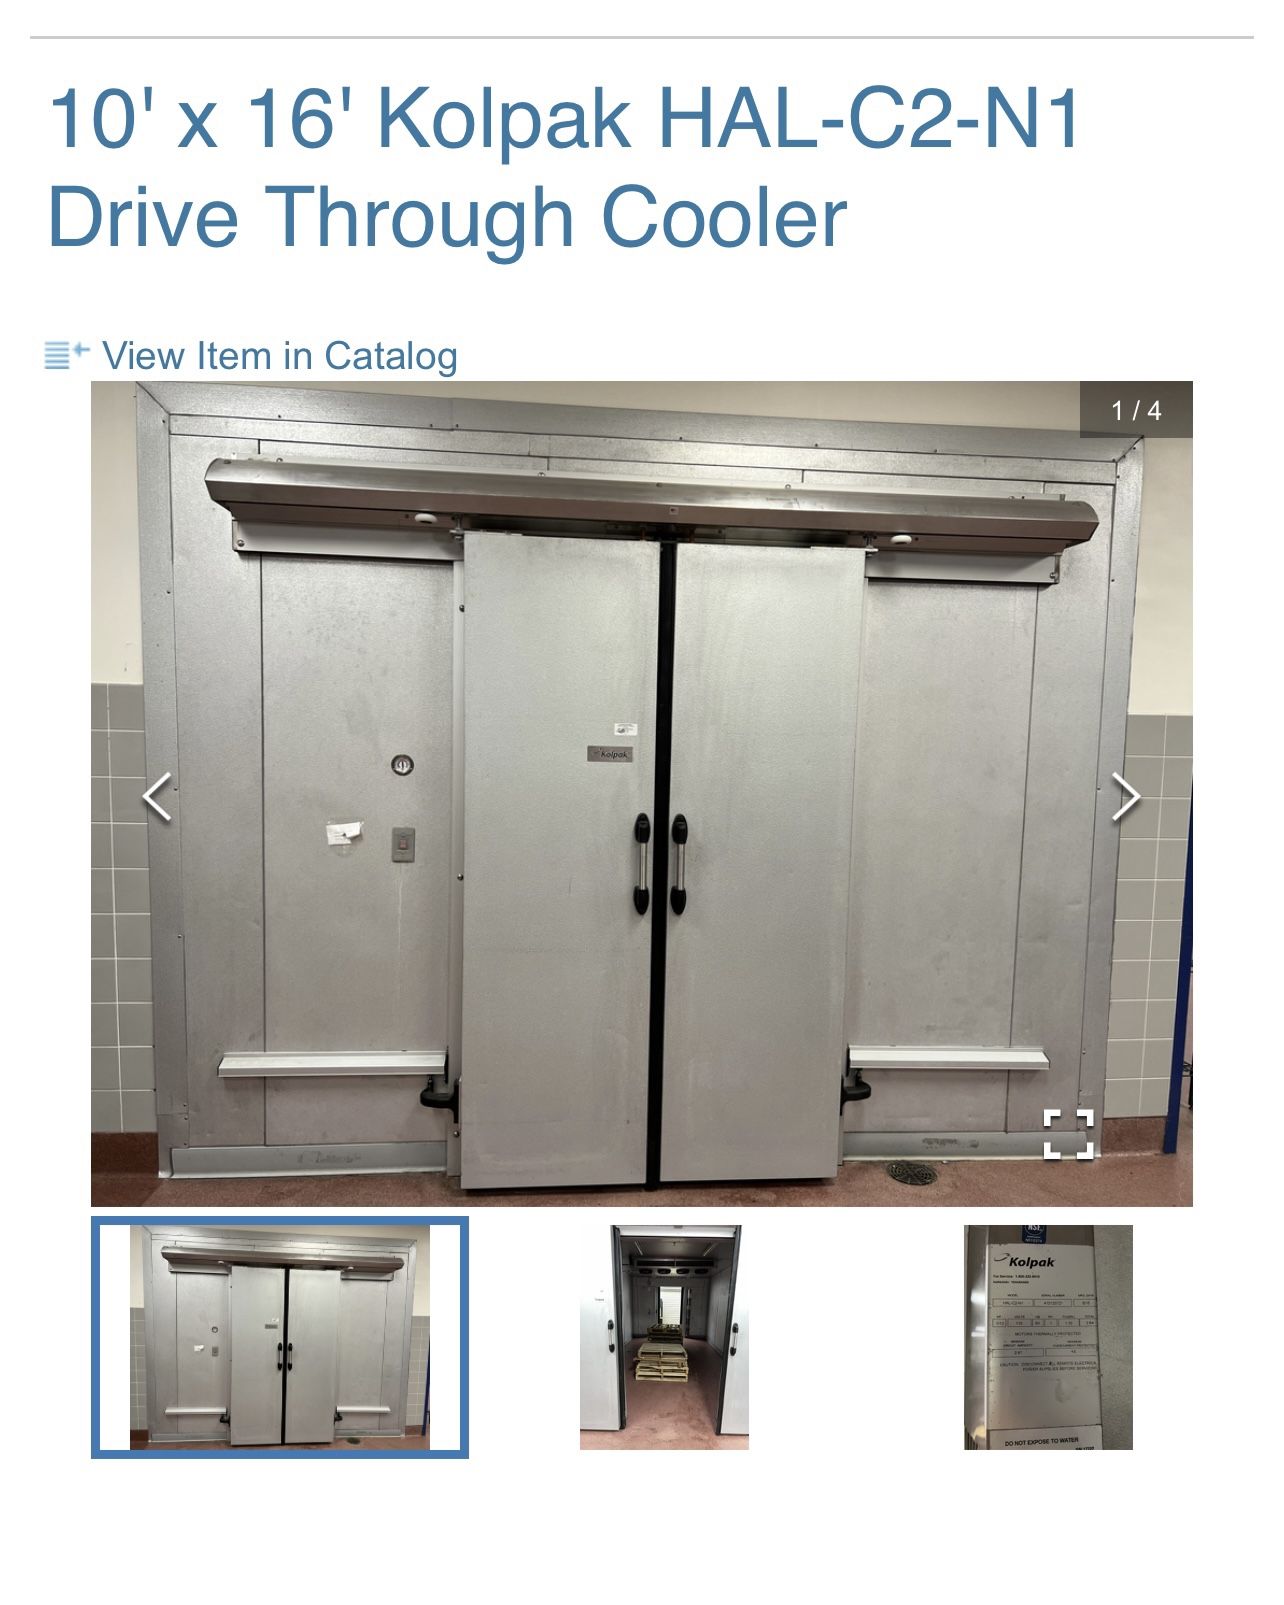 Drive Through Cooler 10’x16’ Kolpak